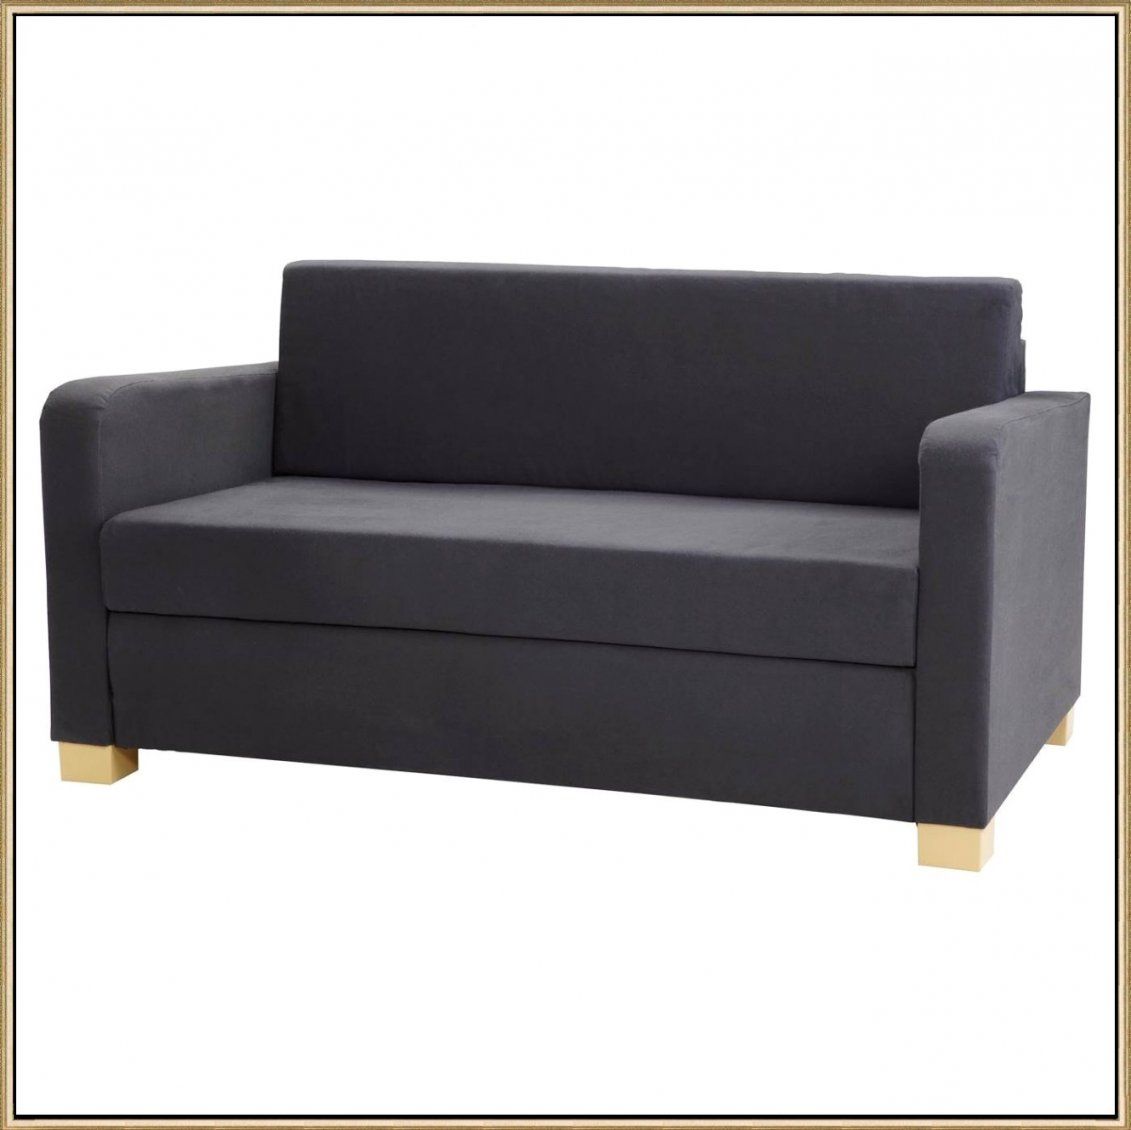 Atemberaubend Kleine Sofas Fur Jugendzimmer Ikea Couch Size Für von Kleine Couch Für Kinderzimmer Photo